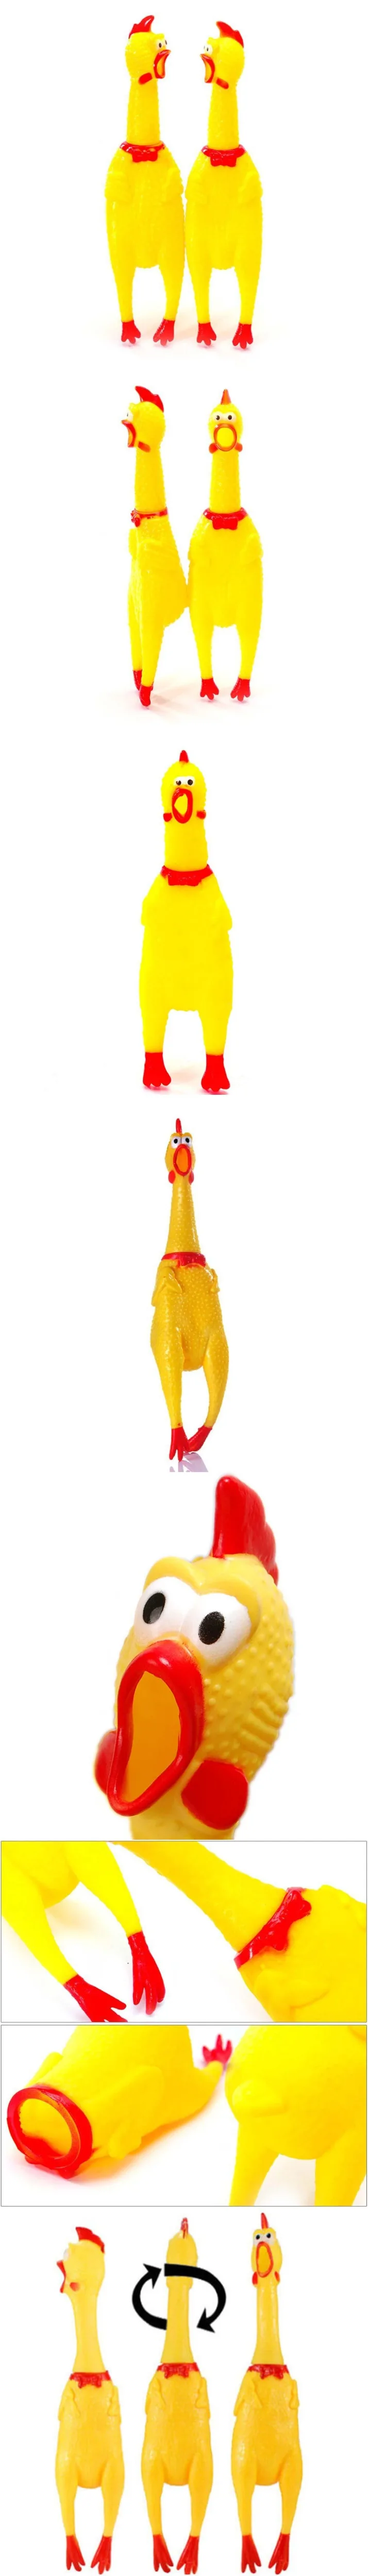 Мини кричать резиновые курица писк Забавные игрушки Сожмите звук игрушки для детей Для женщин Для мужчин антистресс Инструмент Shrilling кур